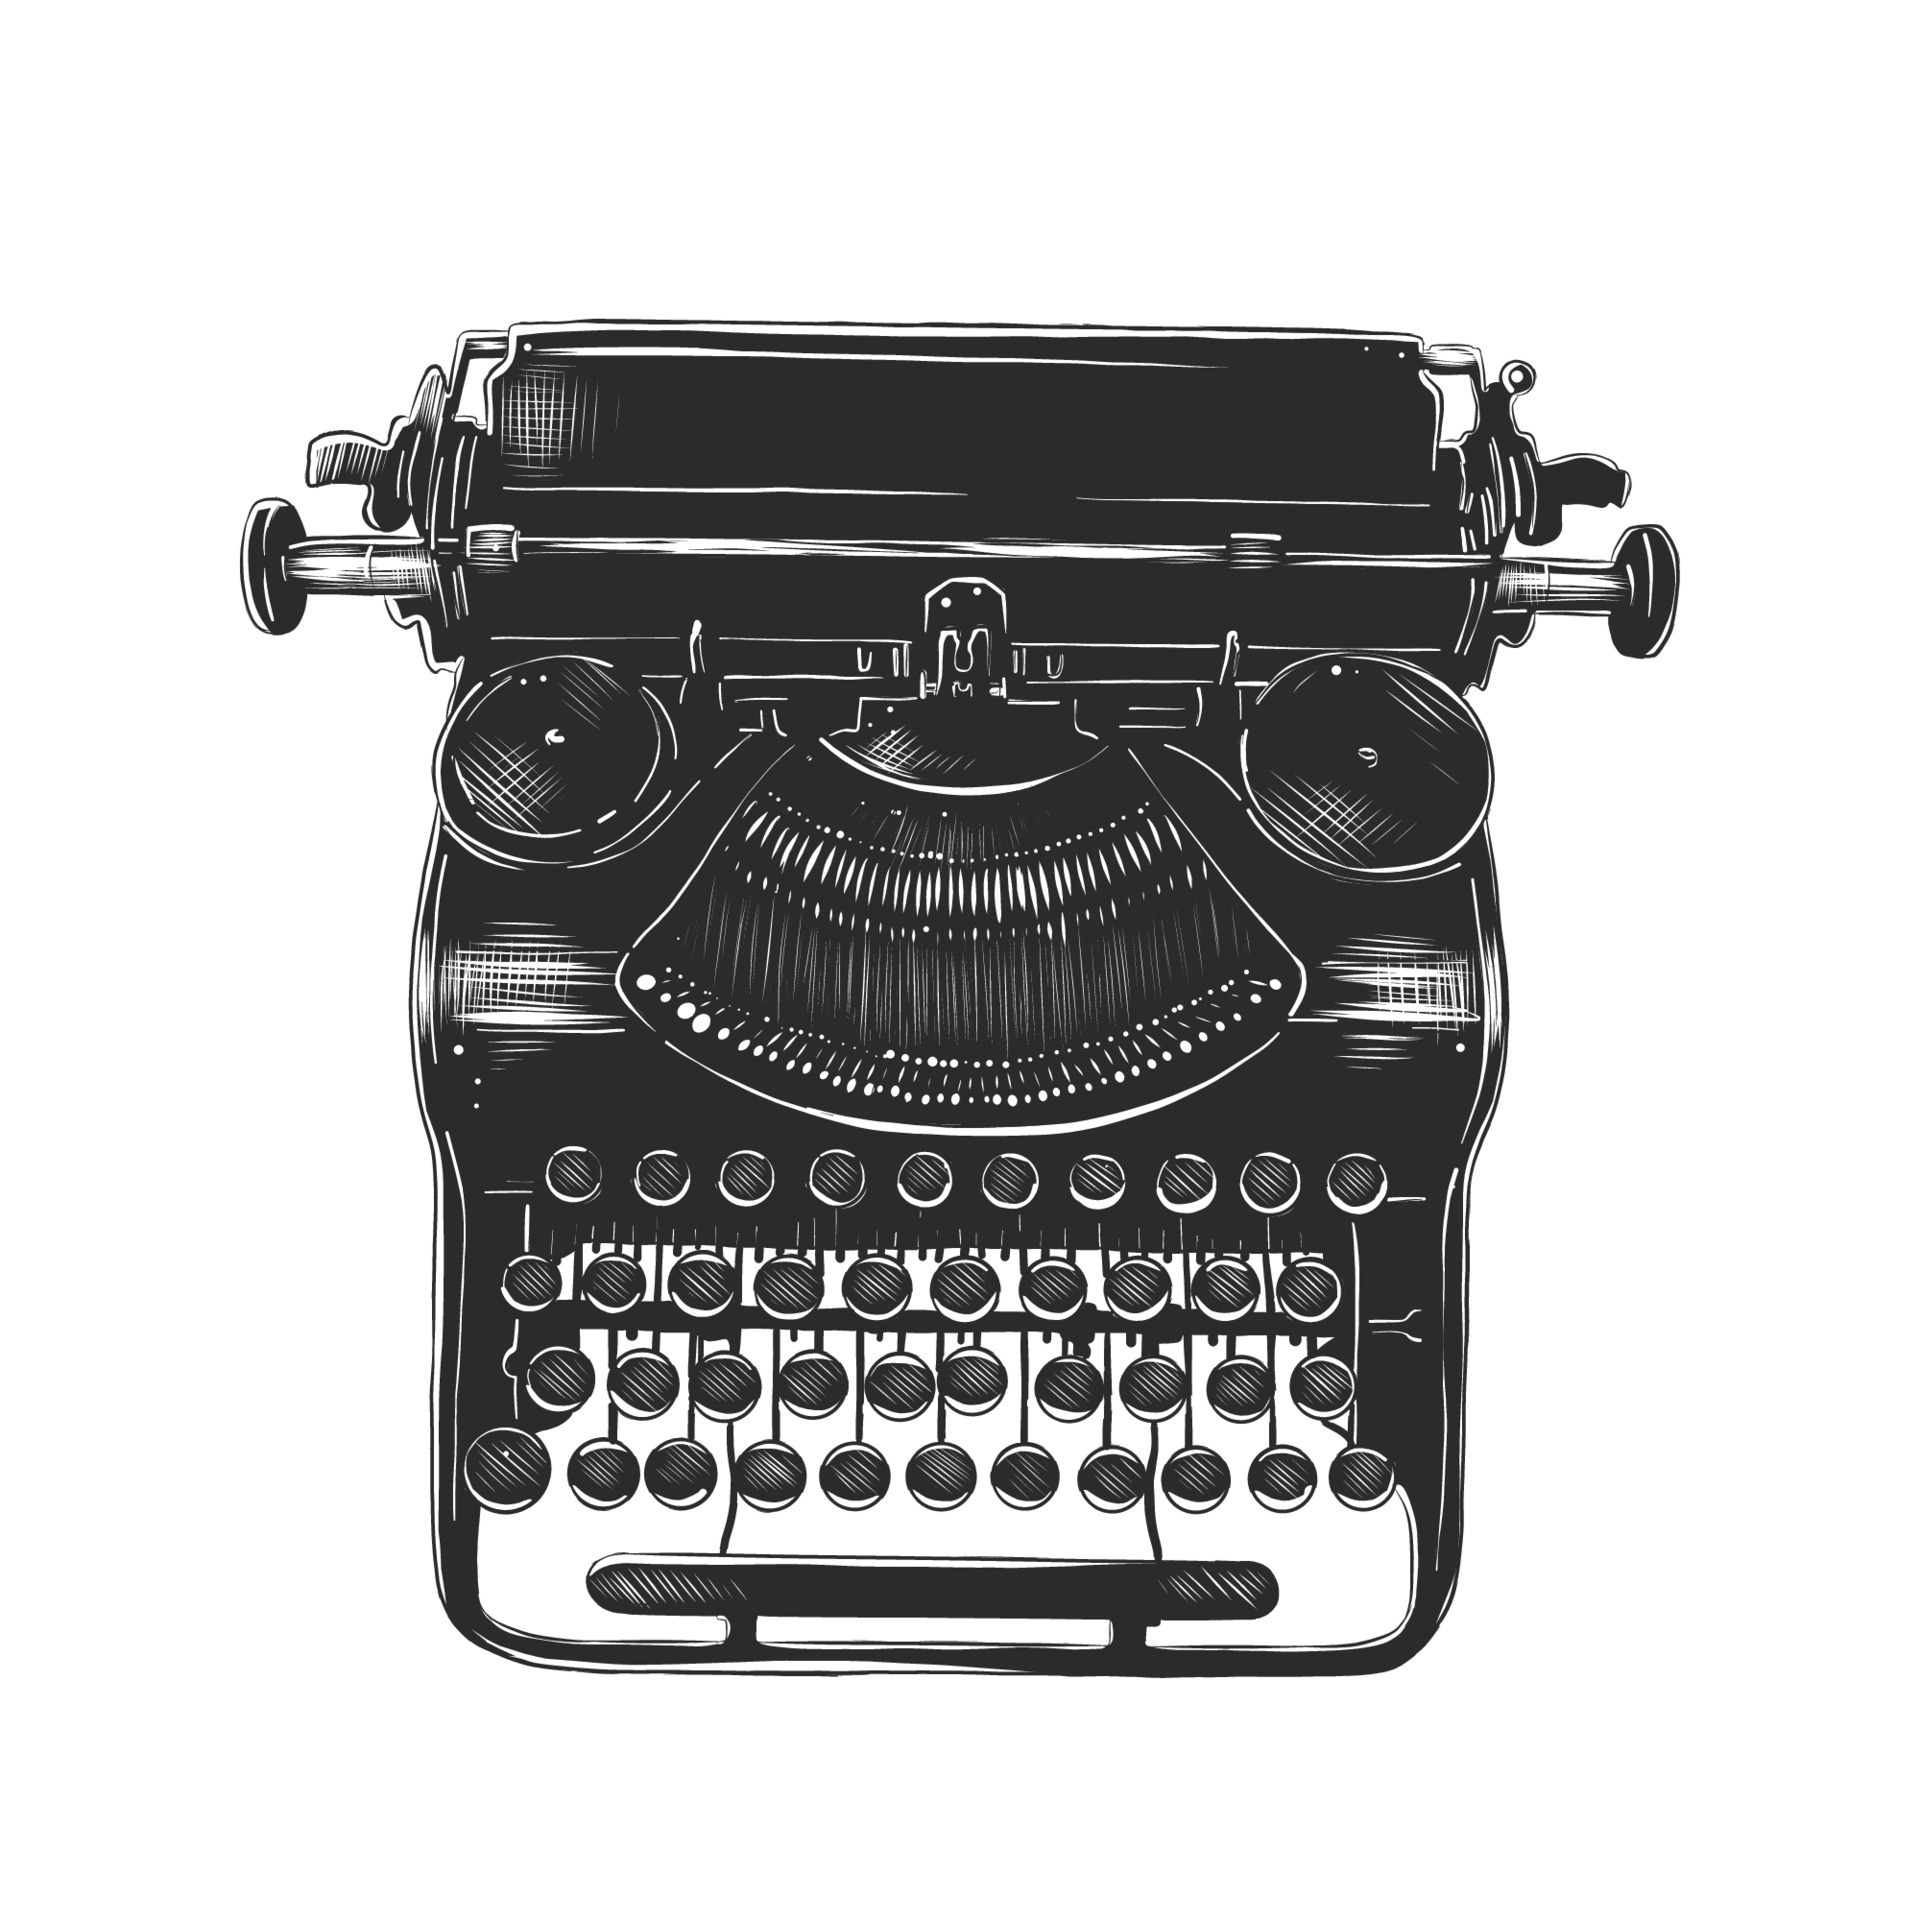 Typewriter Drawing Images  Free Download on Freepik